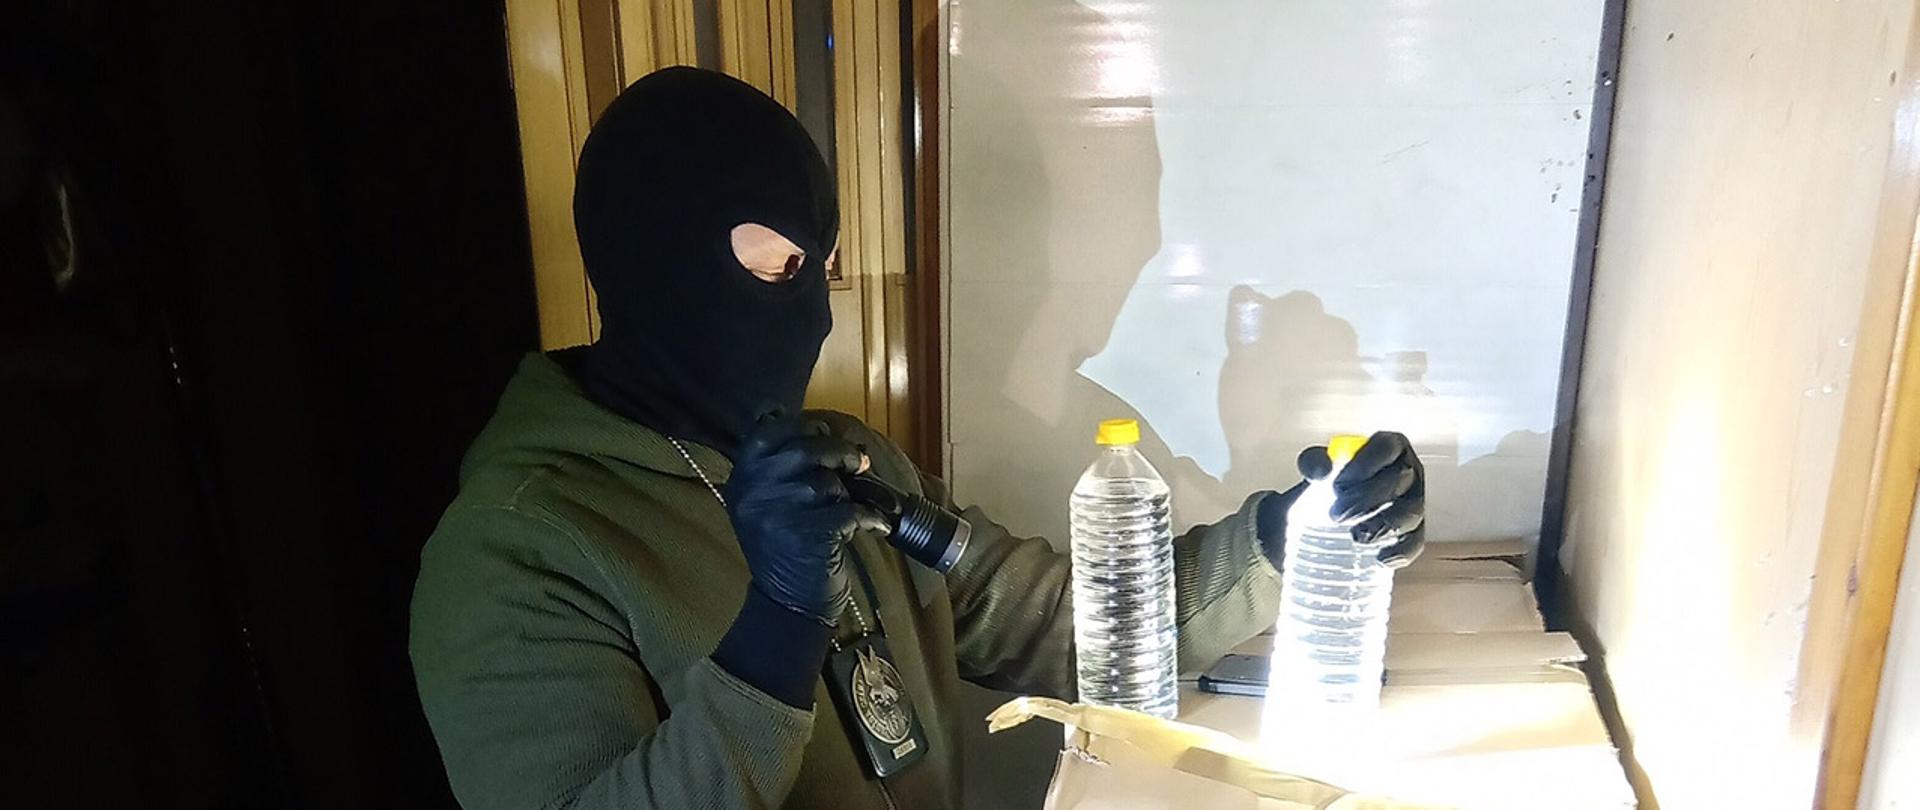 Funkcjonariusz KAS w kominiarce i z latarką podczas inspekcji butelek z nielegalnym alkoholem.